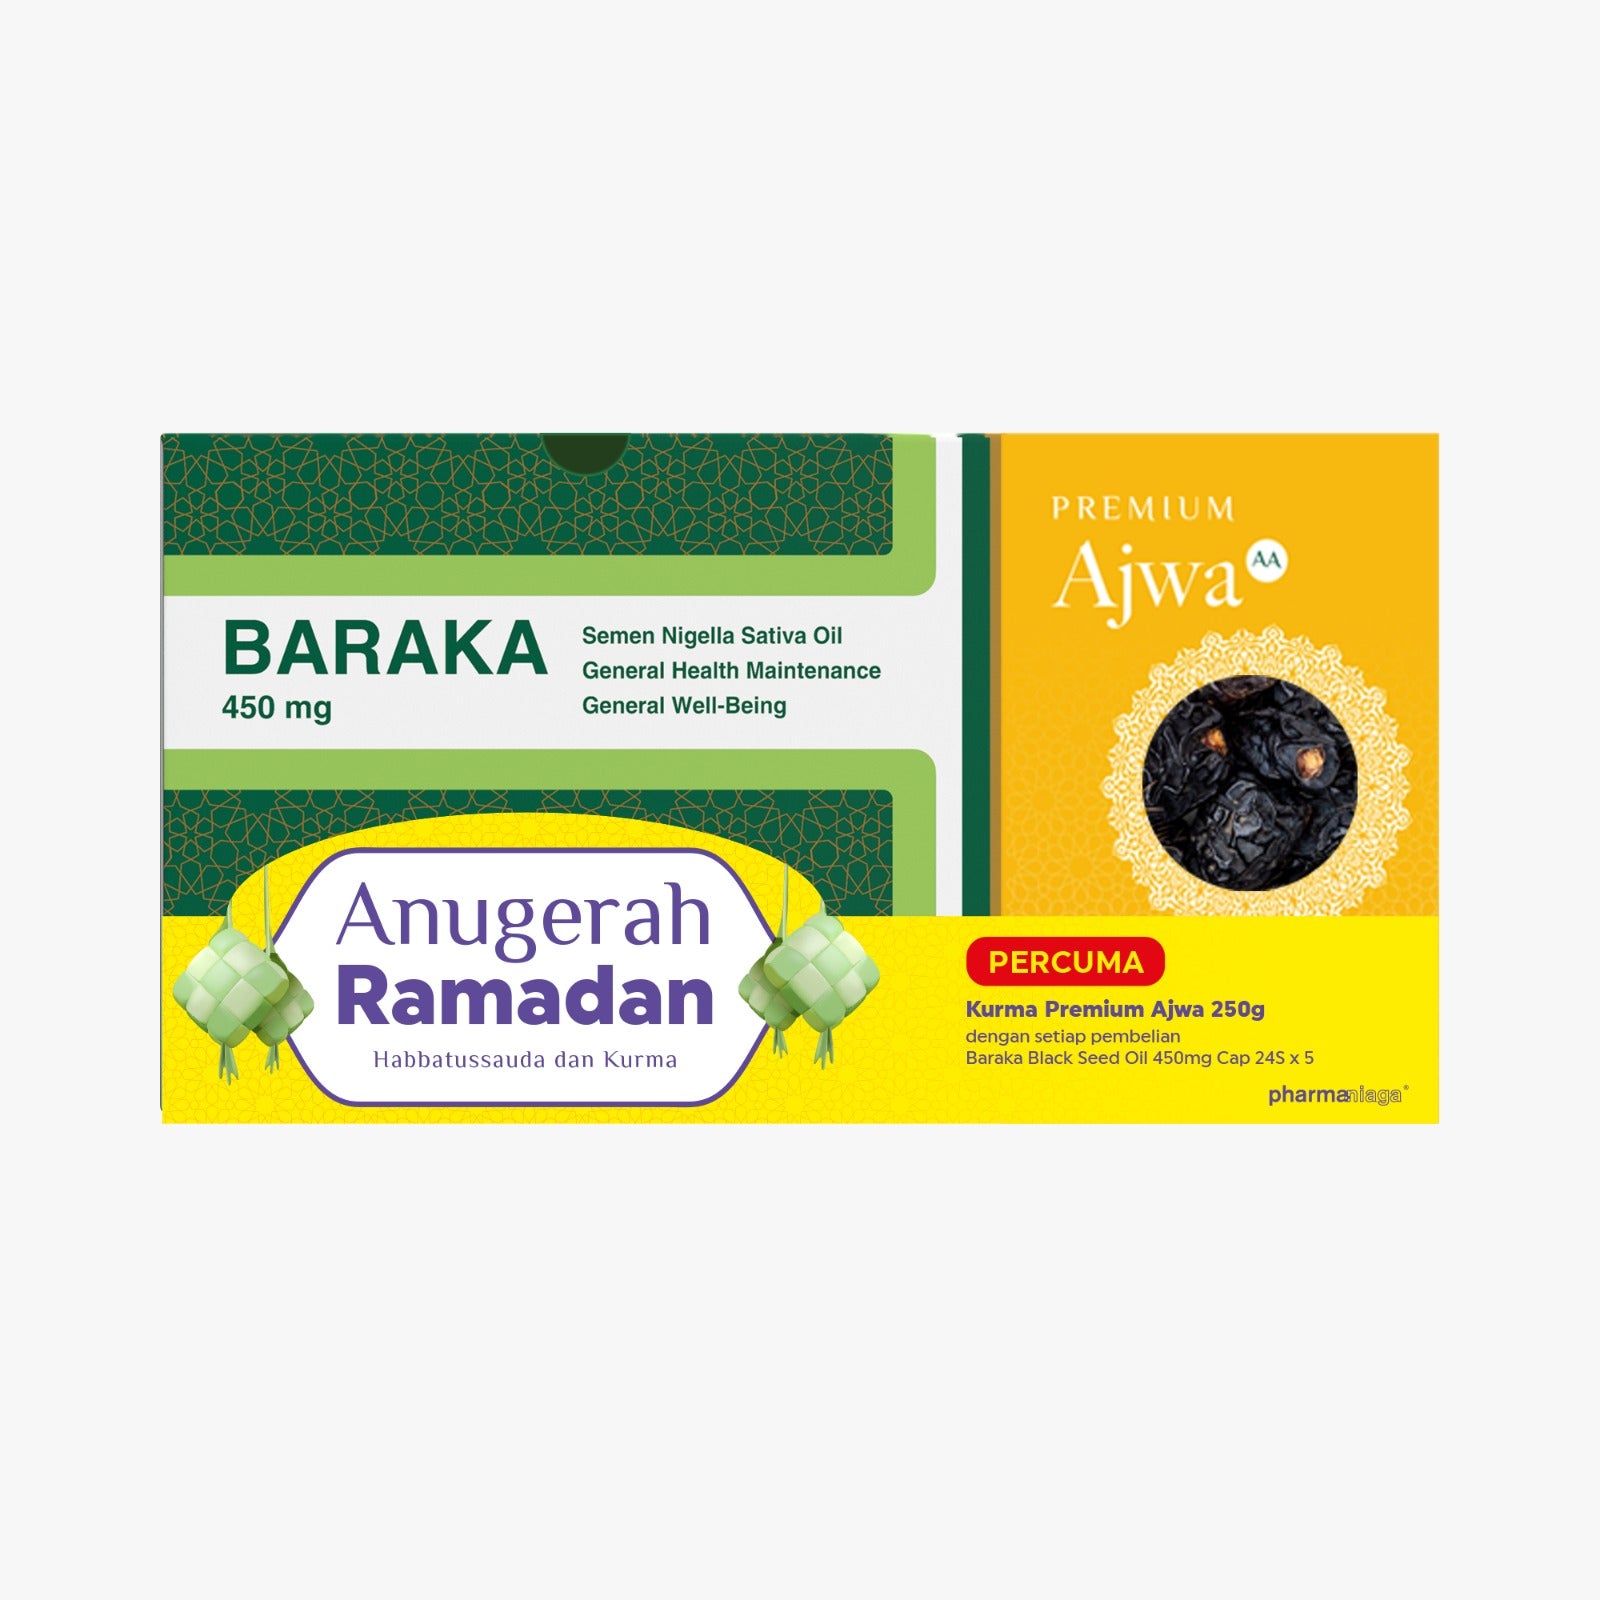 Baraka Anugerah Ramadan